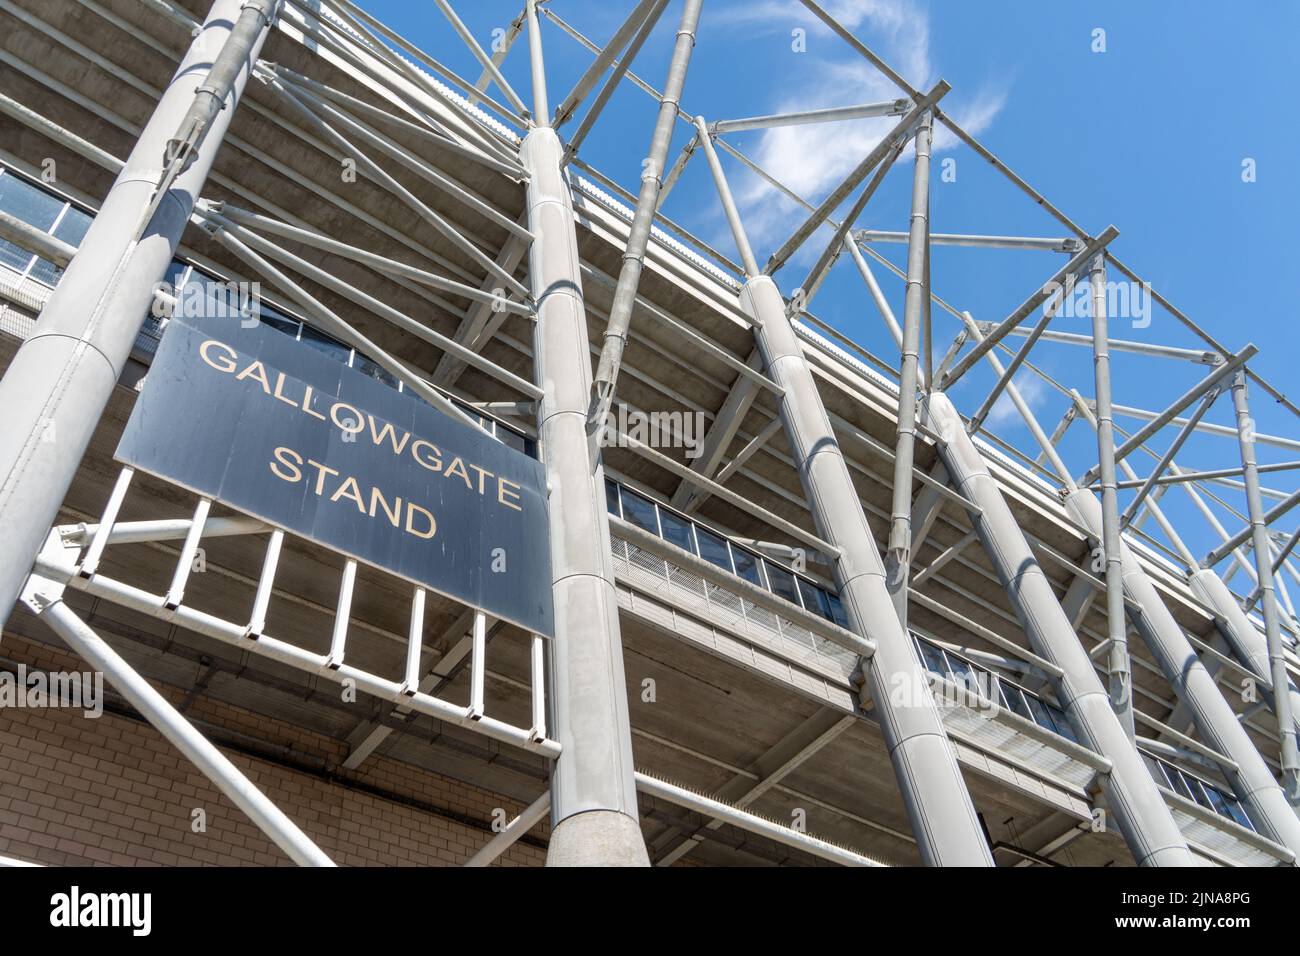 Der Gallowgate-Stand befindet sich im Stadion St. James' Park, dem Fußballstadion der Newcastle United in Newcastle upon Tyne, Großbritannien. Stockfoto